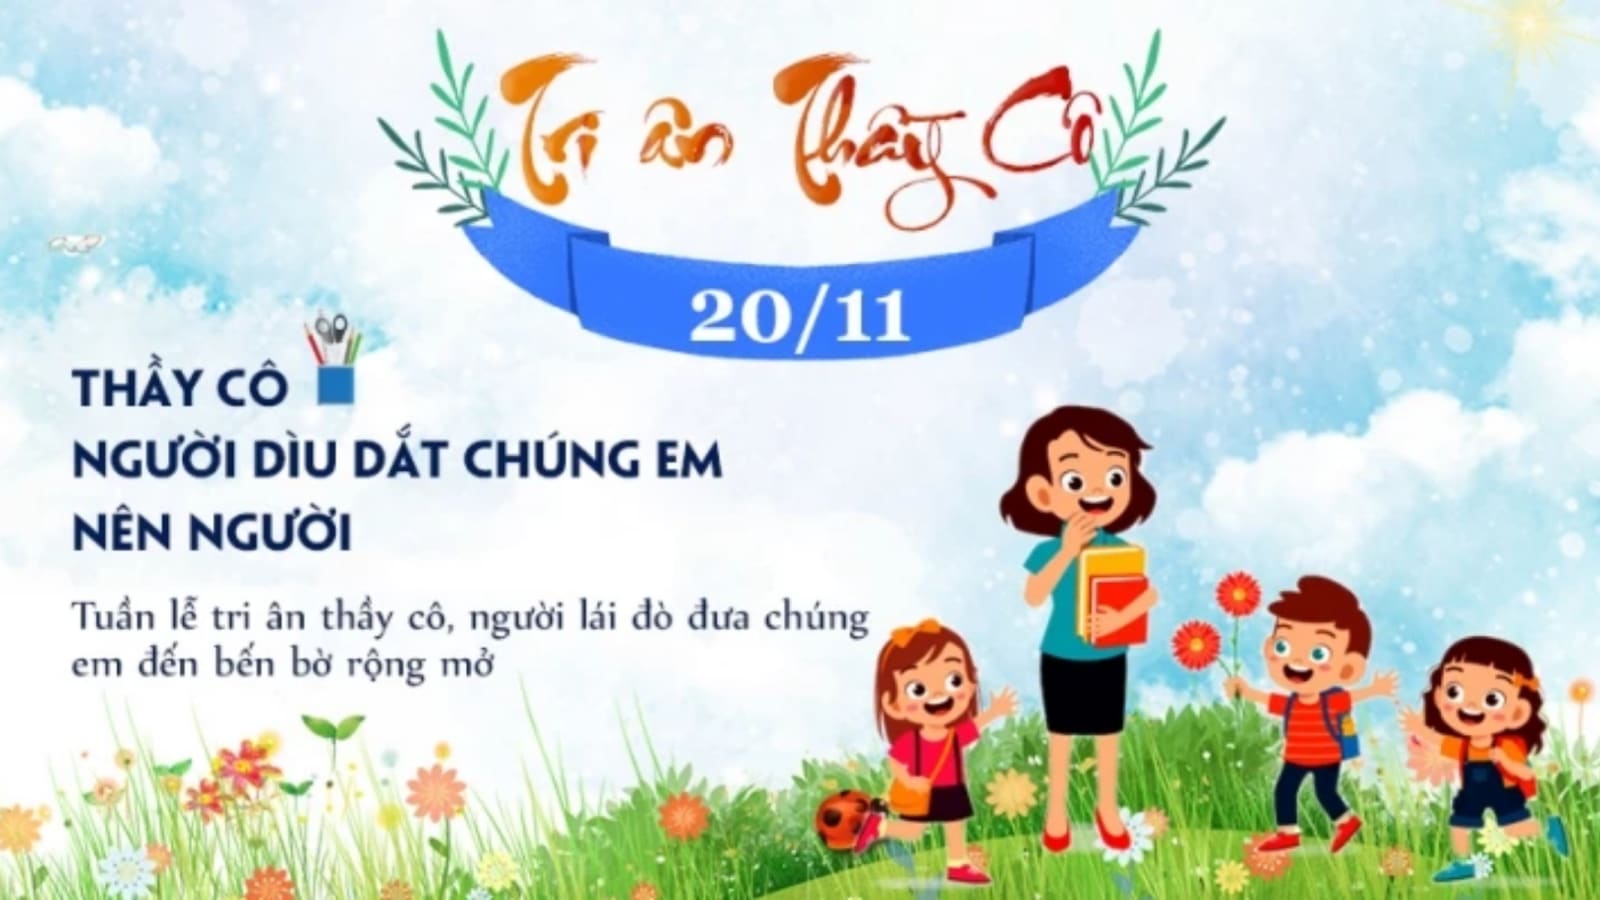 Lễ 20/11 là dịp để tôn vinh các thầy cô giáo của chúng ta và để chúc mừng ngày Nhà giáo Việt Nam. Hãy kỷ niệm ngày này bằng một bức ảnh đầy tình cảm và ý nghĩa của bạn cùng gia đình và bạn bè bên bữa tiệc đầy trang trọng và ấm cúng.